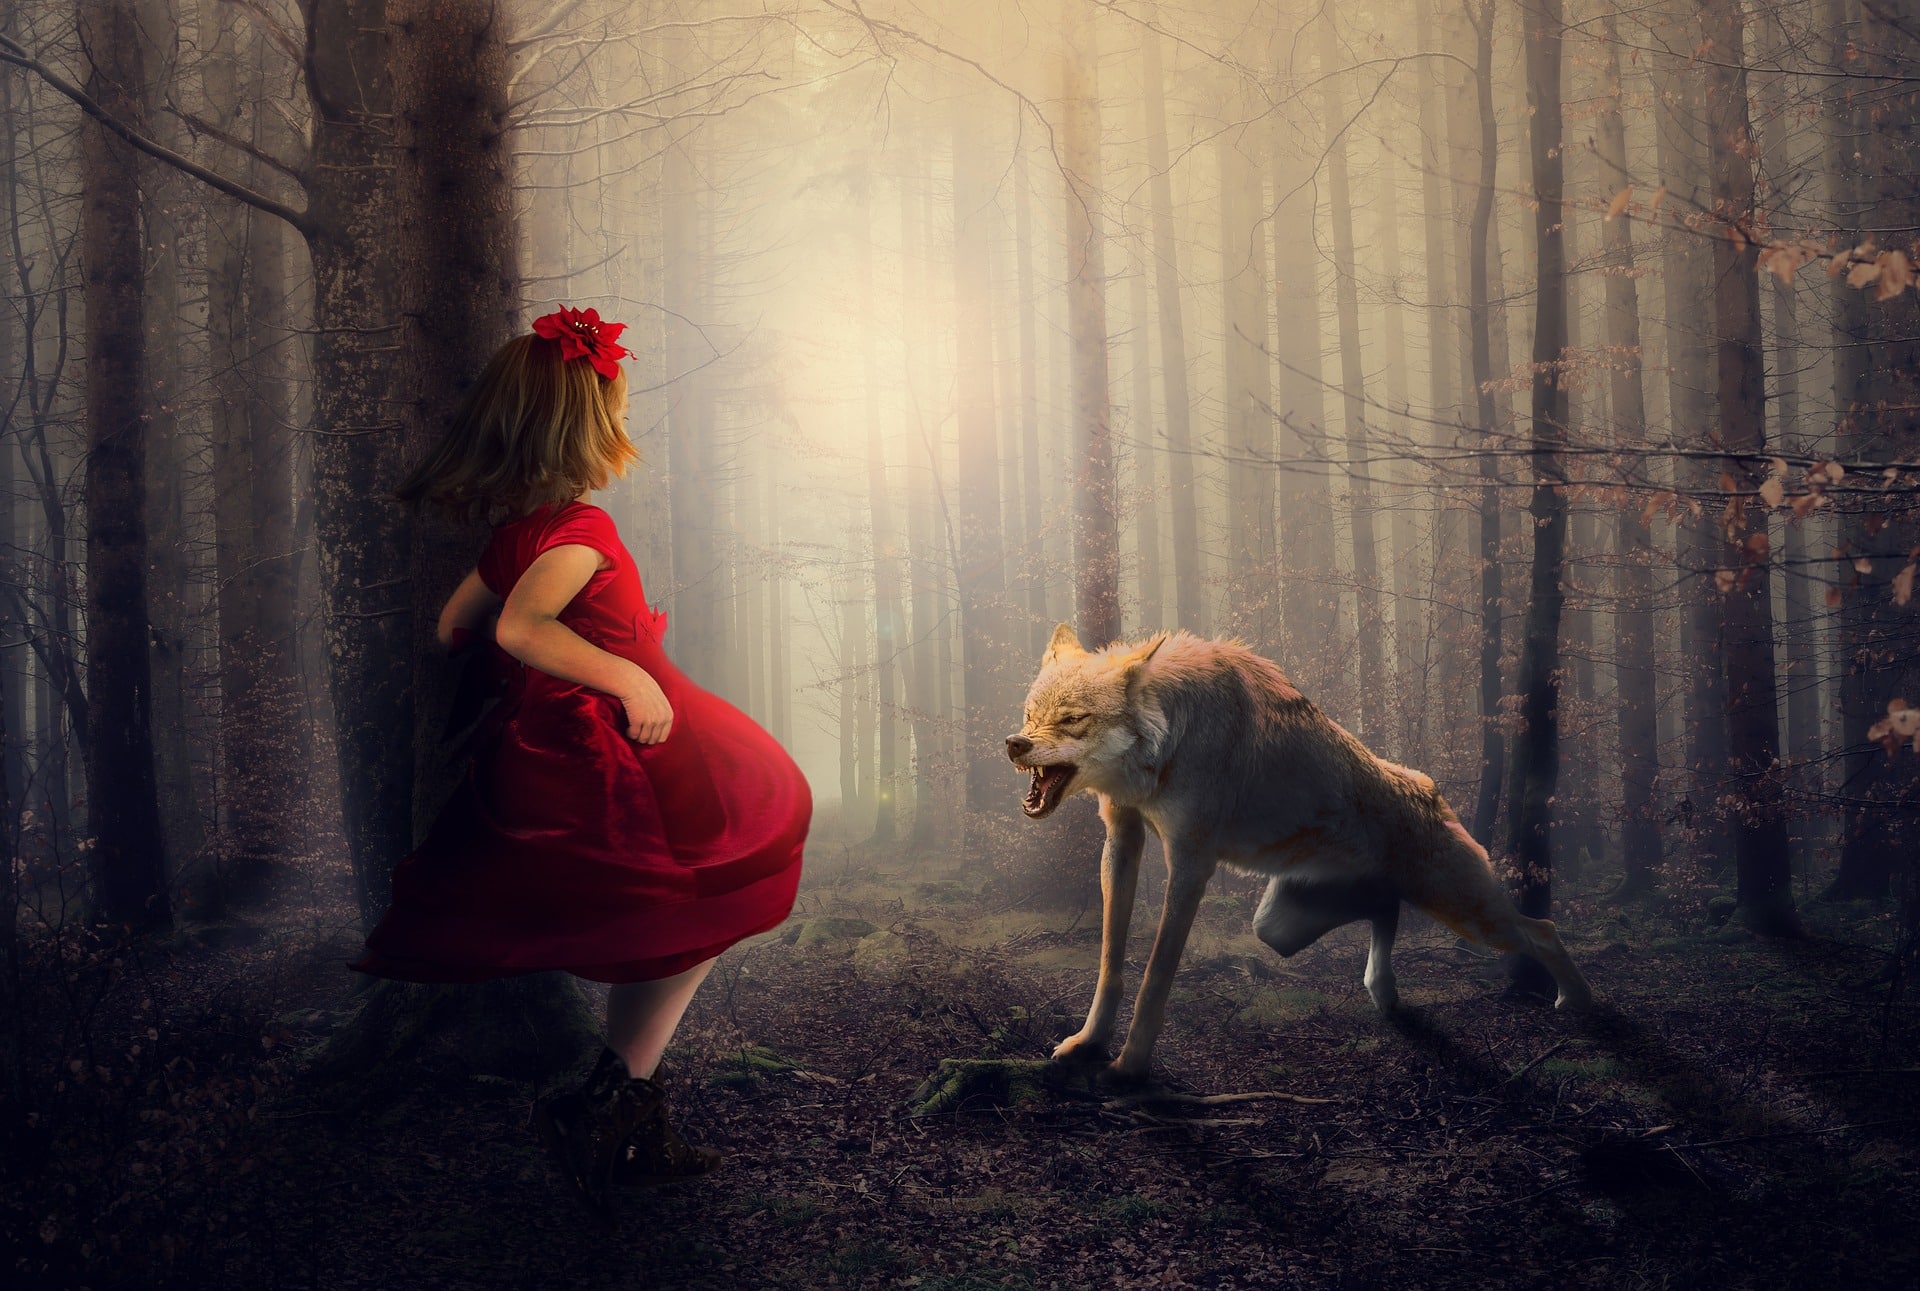 L’augurio “in bocca al lupo” nel mirino degli animalisti: “Cappuccetto rosso? Una favola da abolire, offende il lupo”